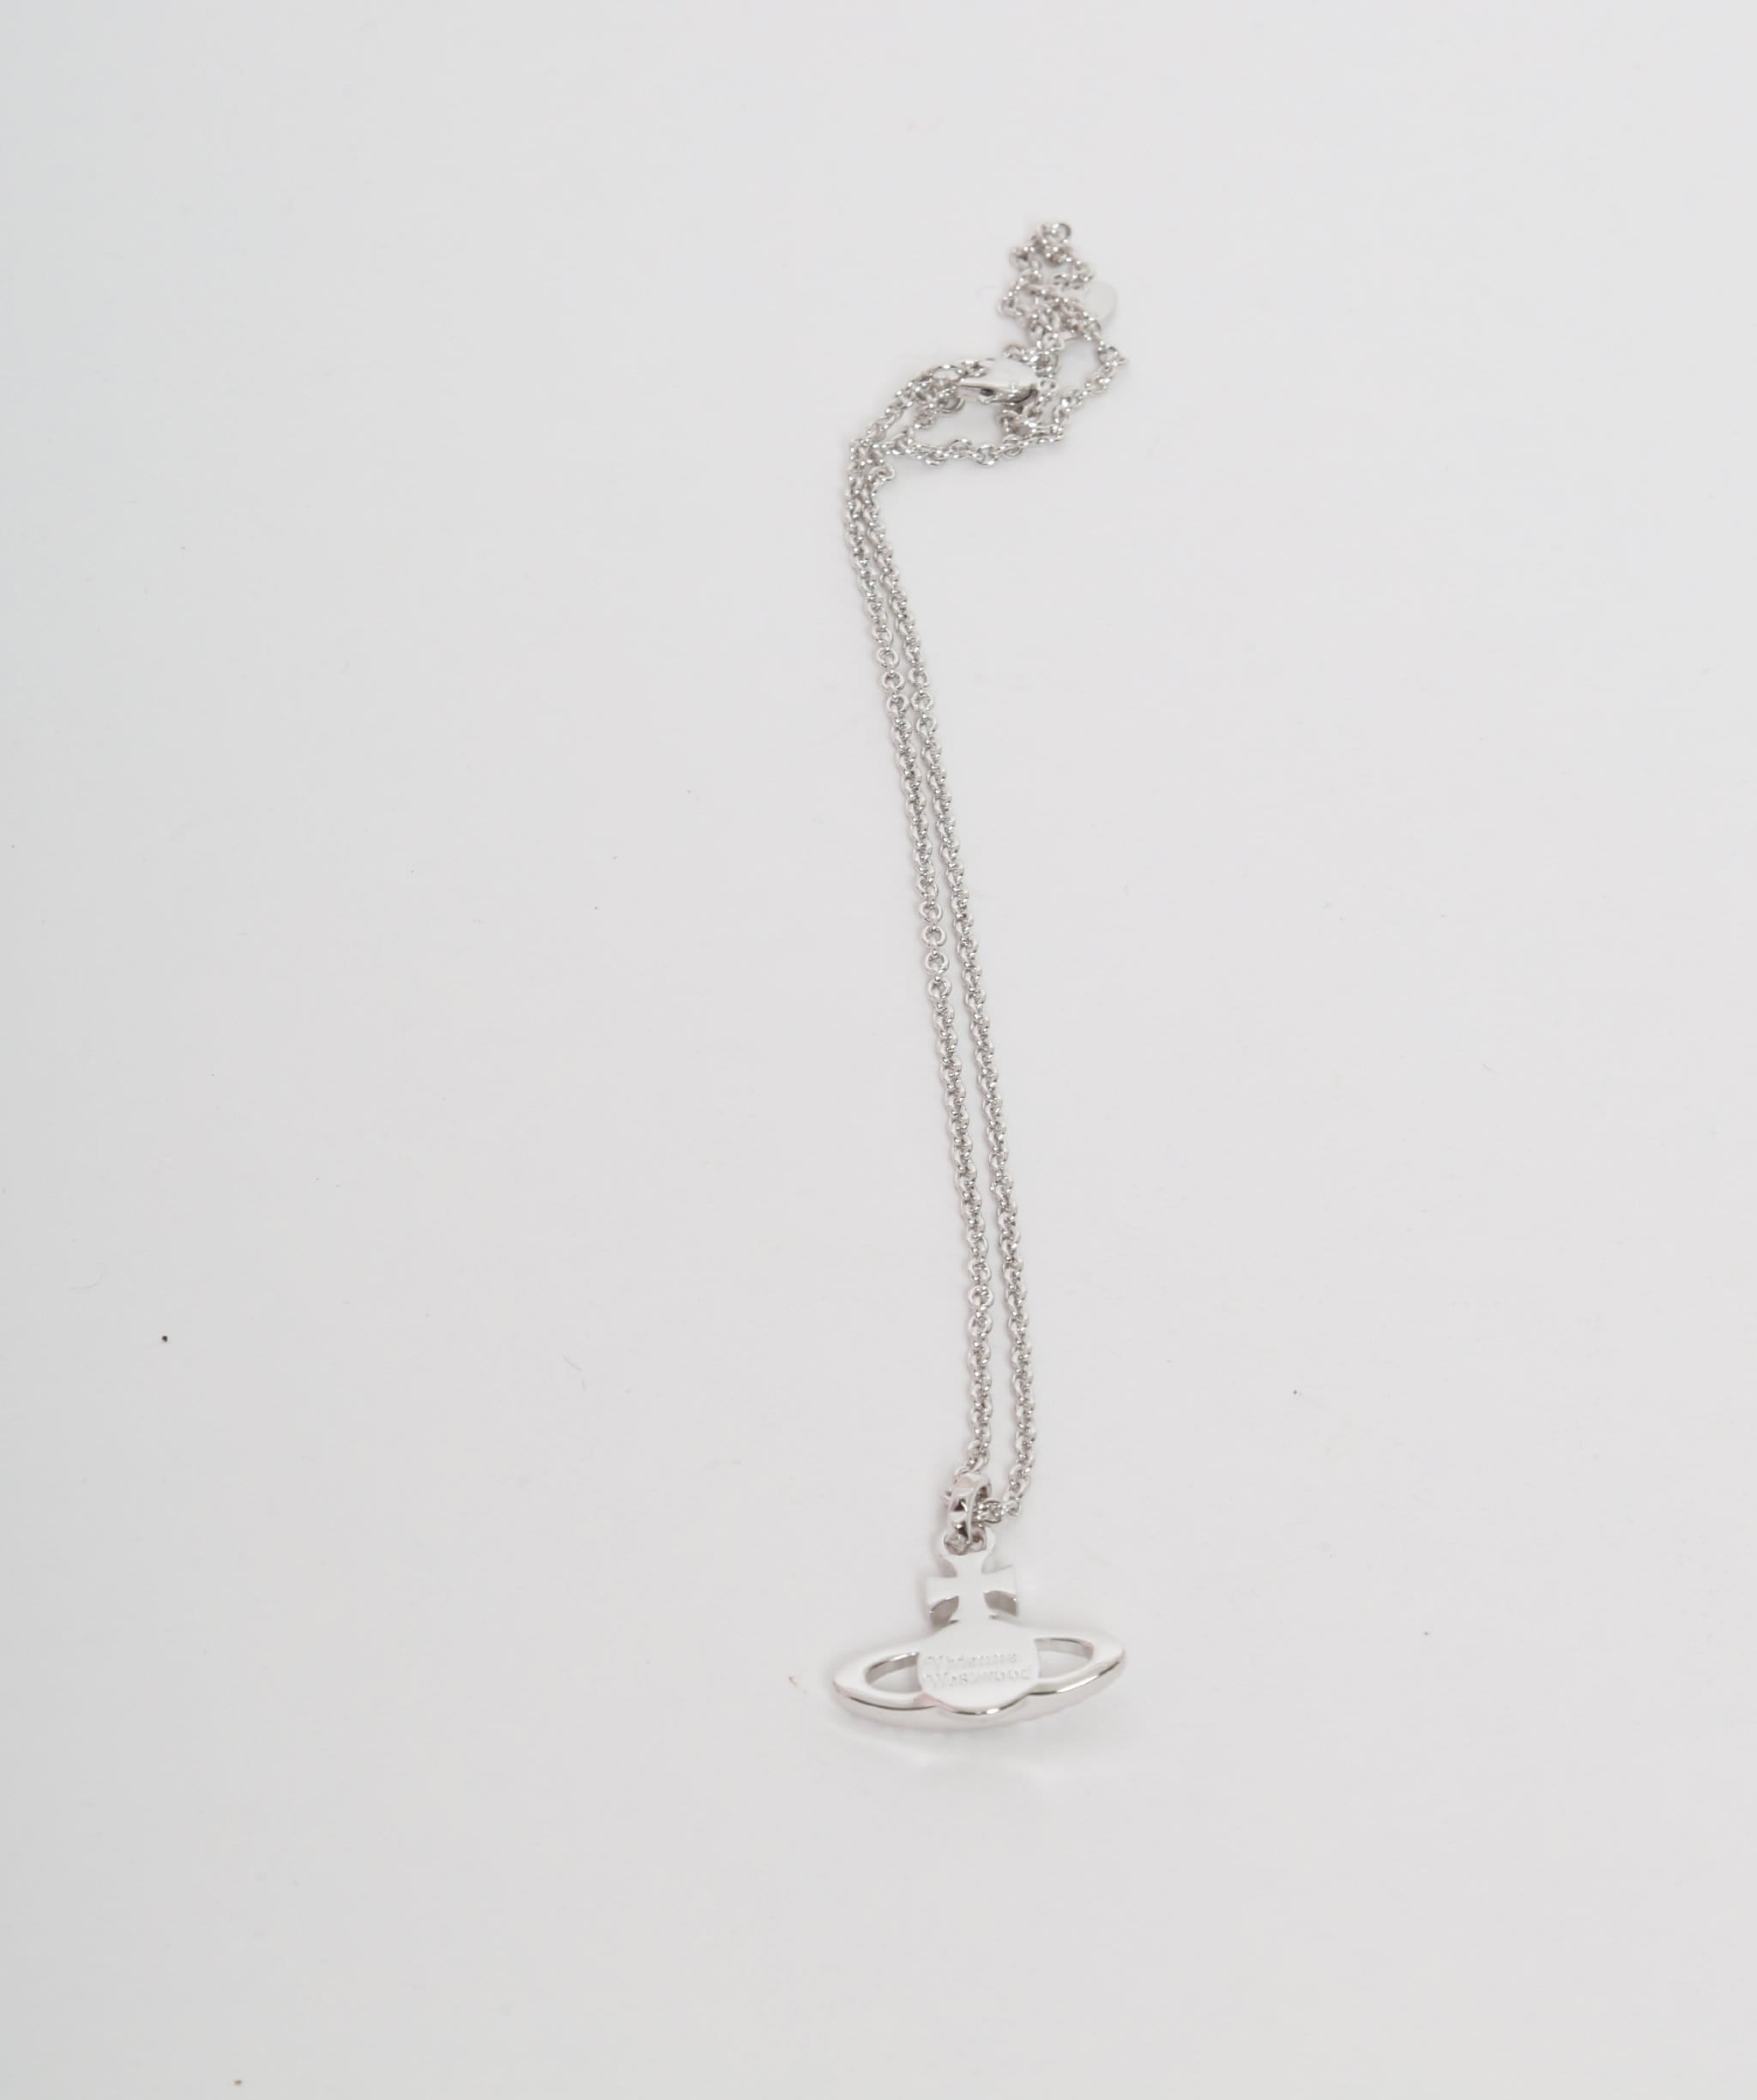 Vivienne Westwood Vivienne Westwood Crystal Orb Necklace Silver